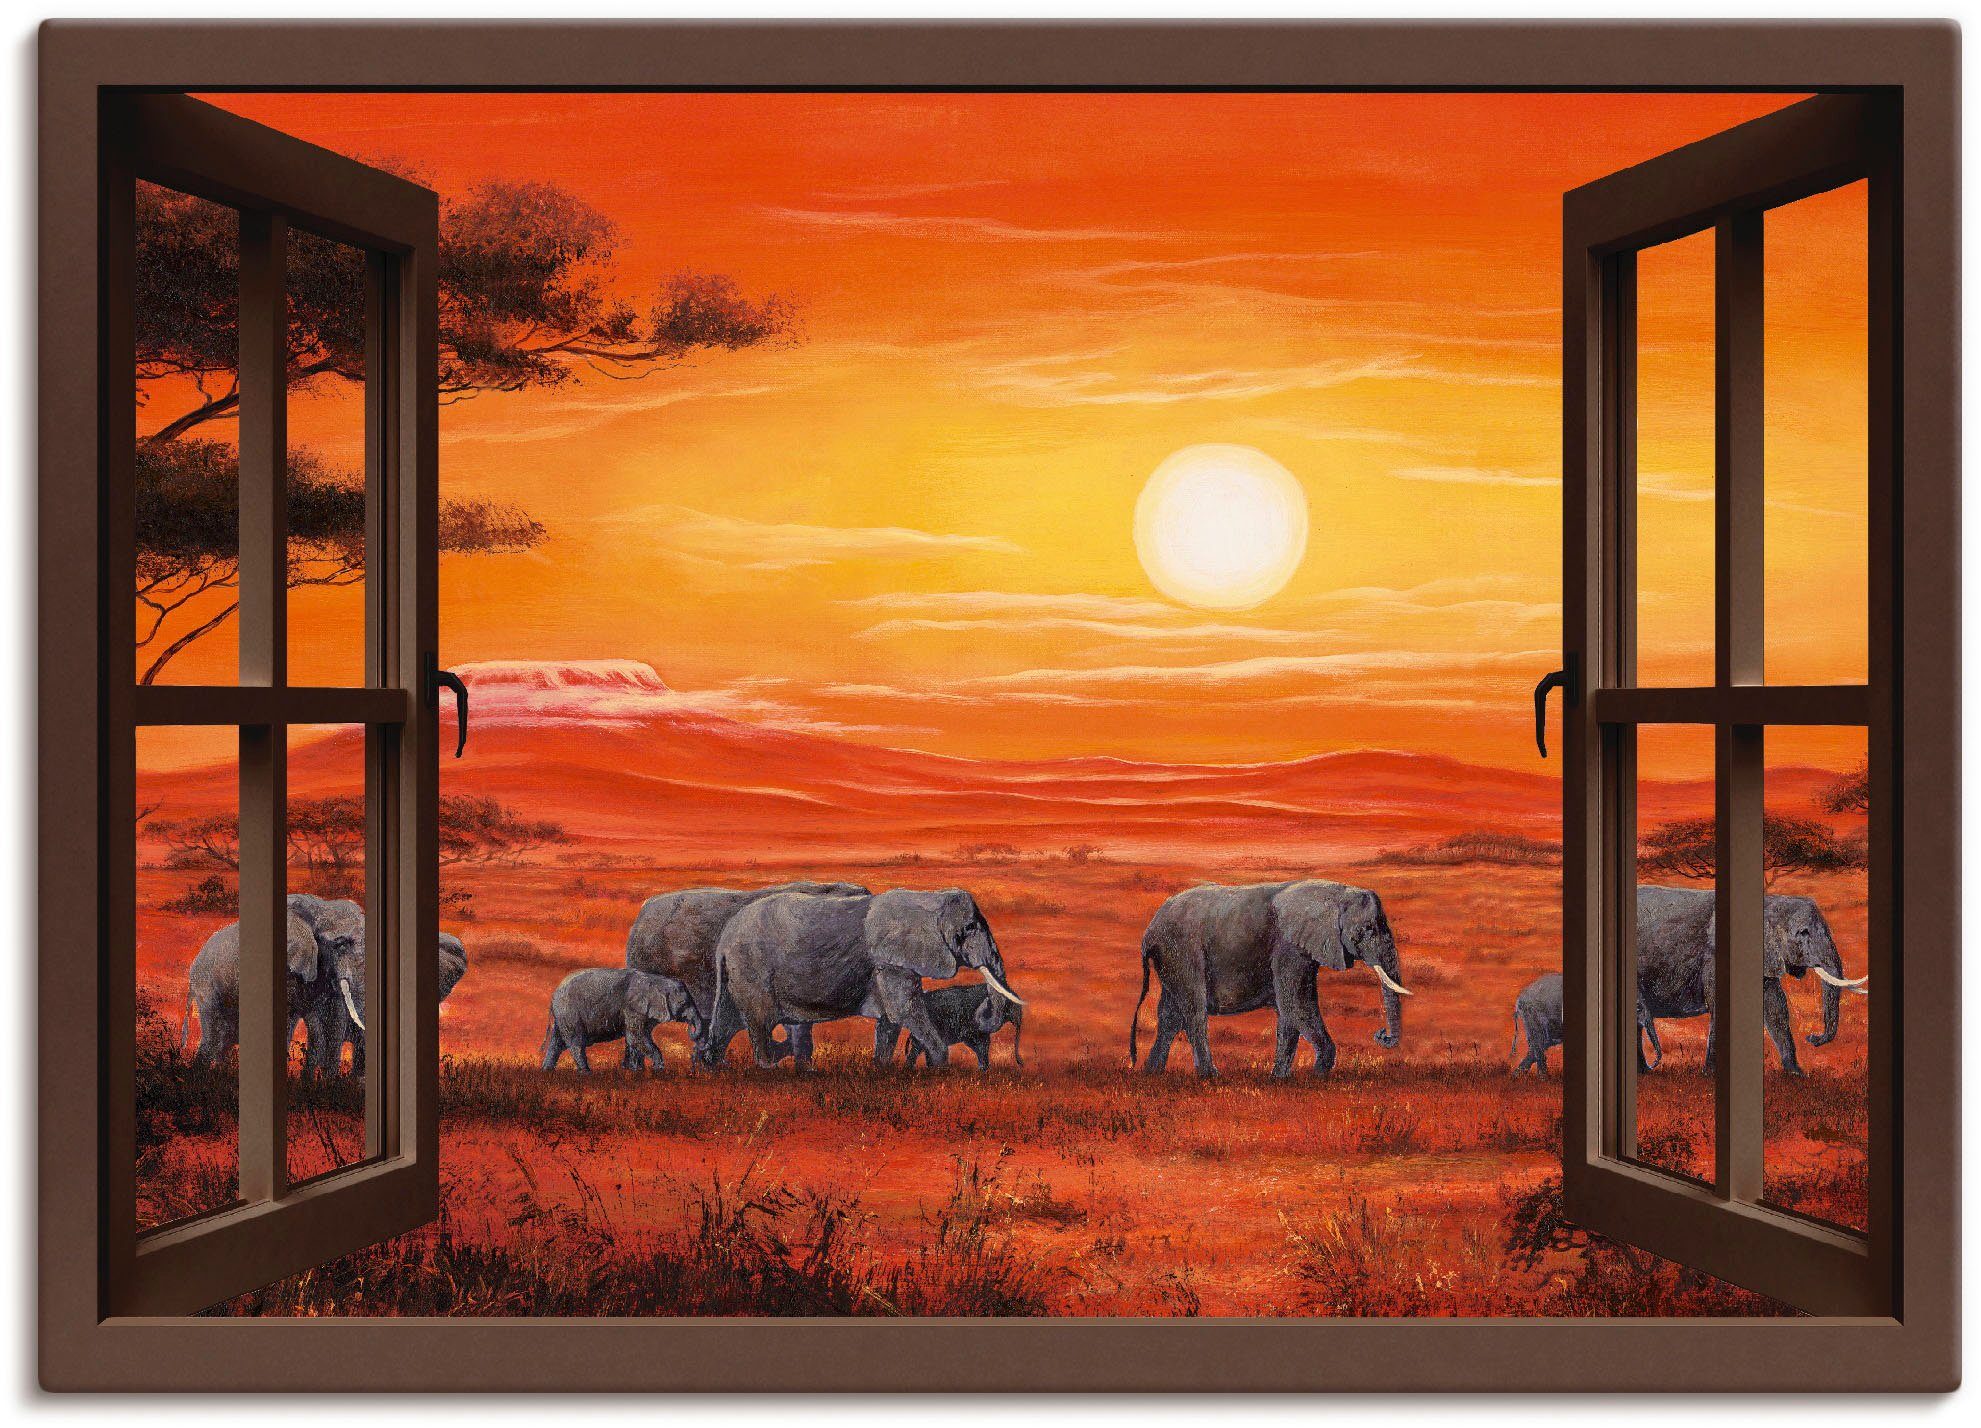 Artland Artprint Blik uit het venster - olifantenkudde in vele afmetingen & productsoorten -artprint op linnen, poster, muursticker / wandfolie ook geschikt voor de badkamer (1 stu